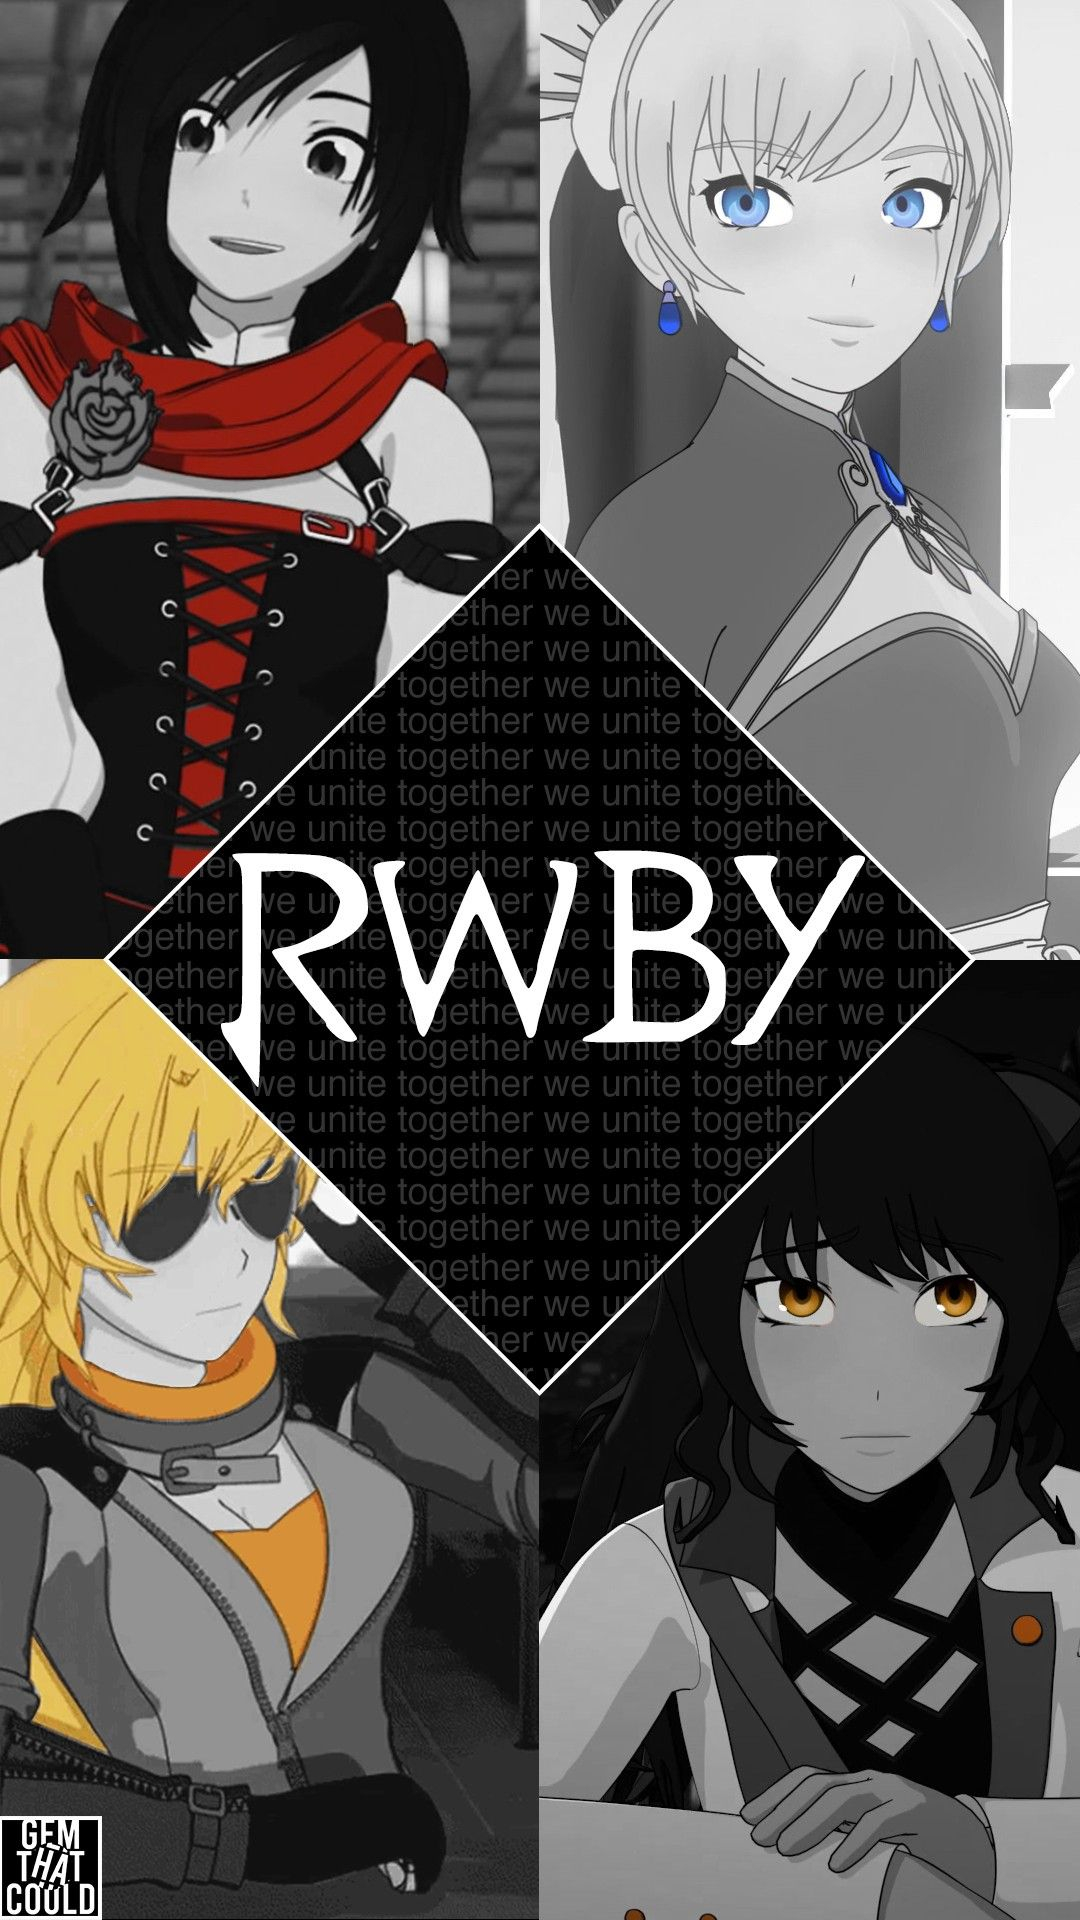 1080x1920 RWBY Phone Wallpaper (1080p) | Rwby, Rwby anime, Rwby wallpaper